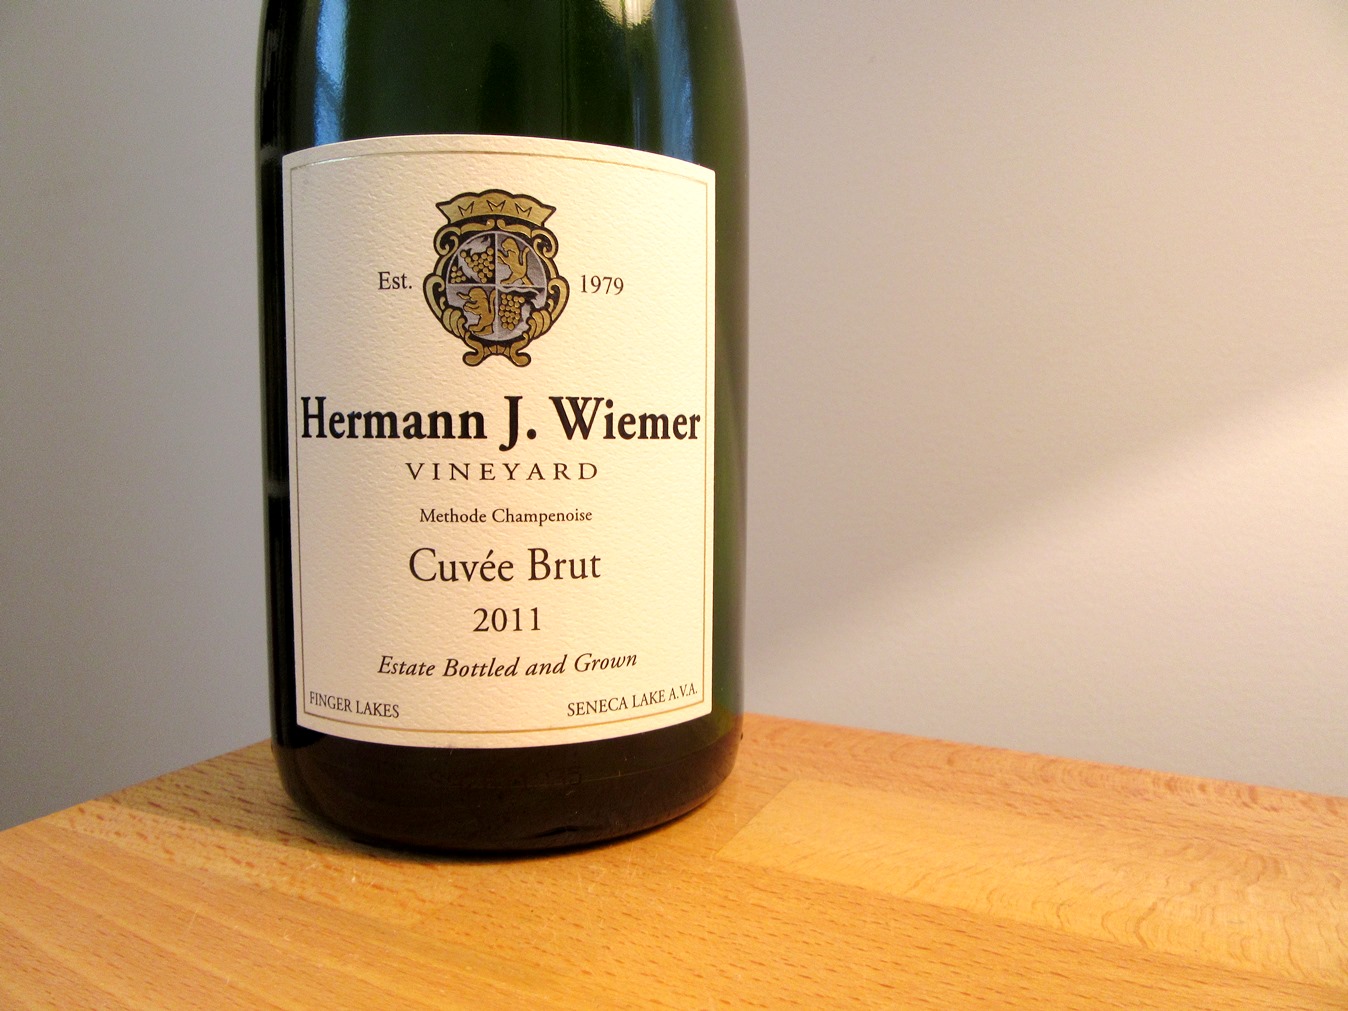 Hermann J. Wiemer Vineyard, Cuveé Brut 2011, Seneca Lake, New York, Wine Casual